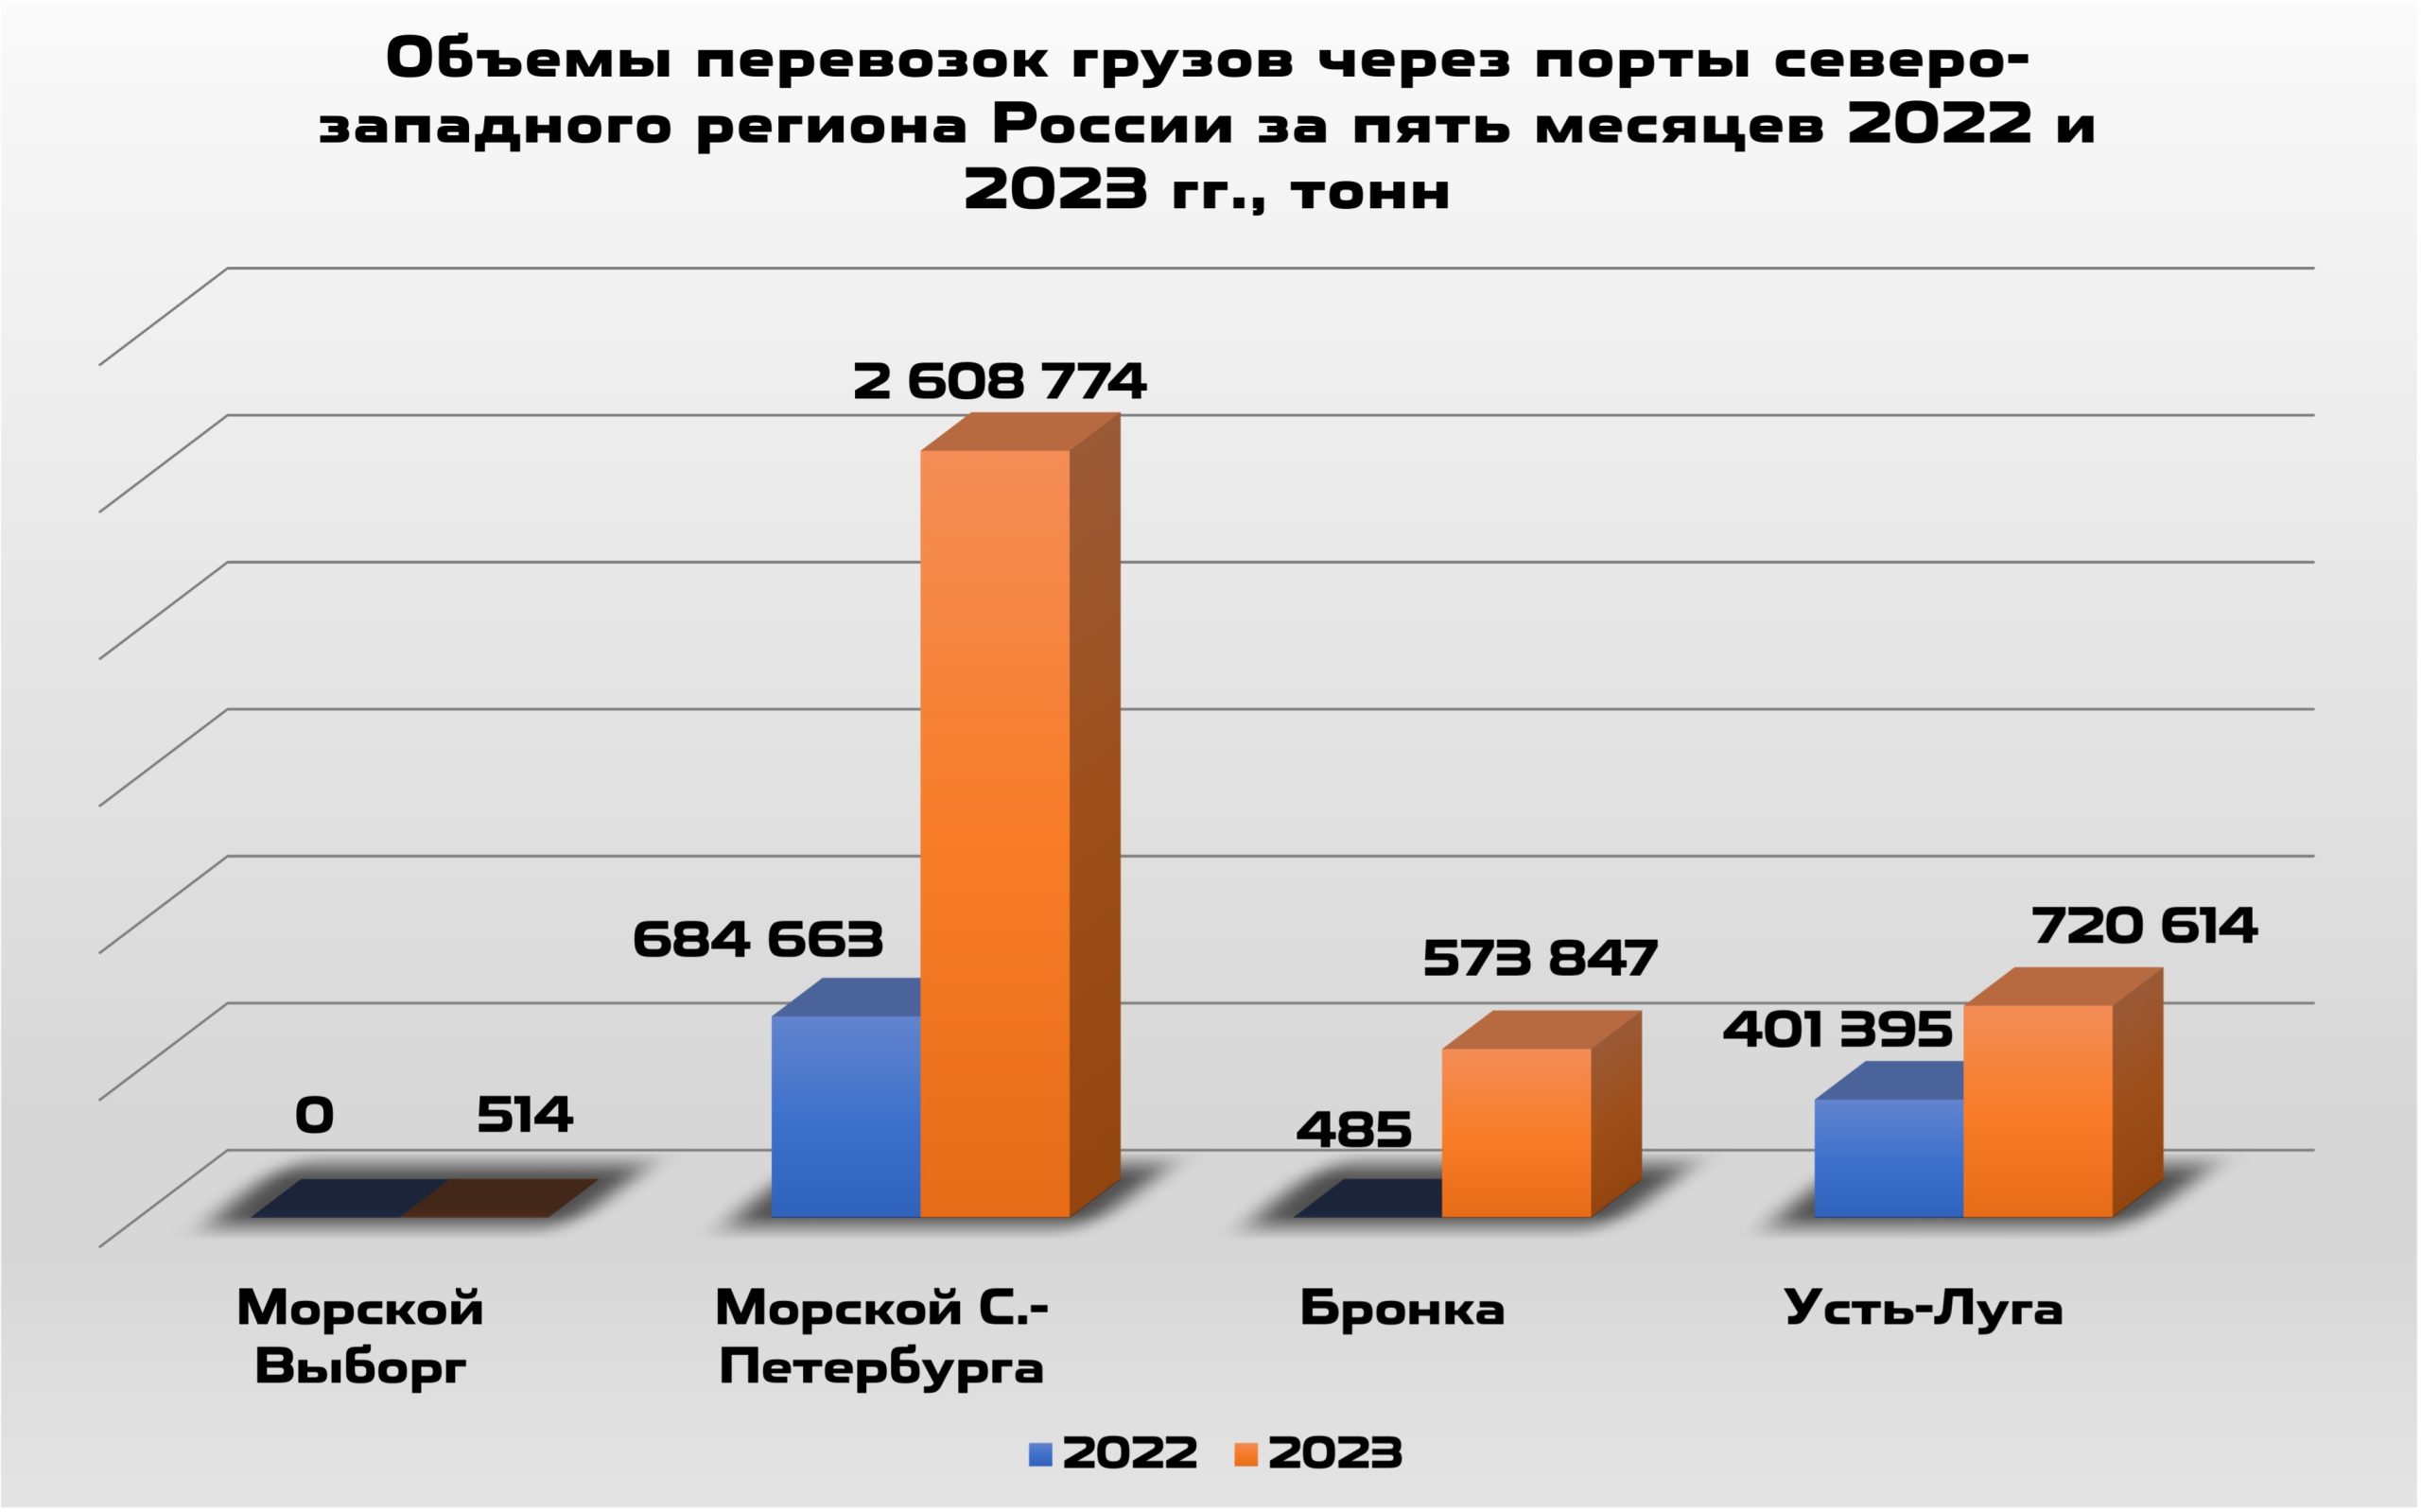 2 Объемы перевозок грузов через порты Северо-Западного региона России за пять месяцев 2022 и 2023 г.г.